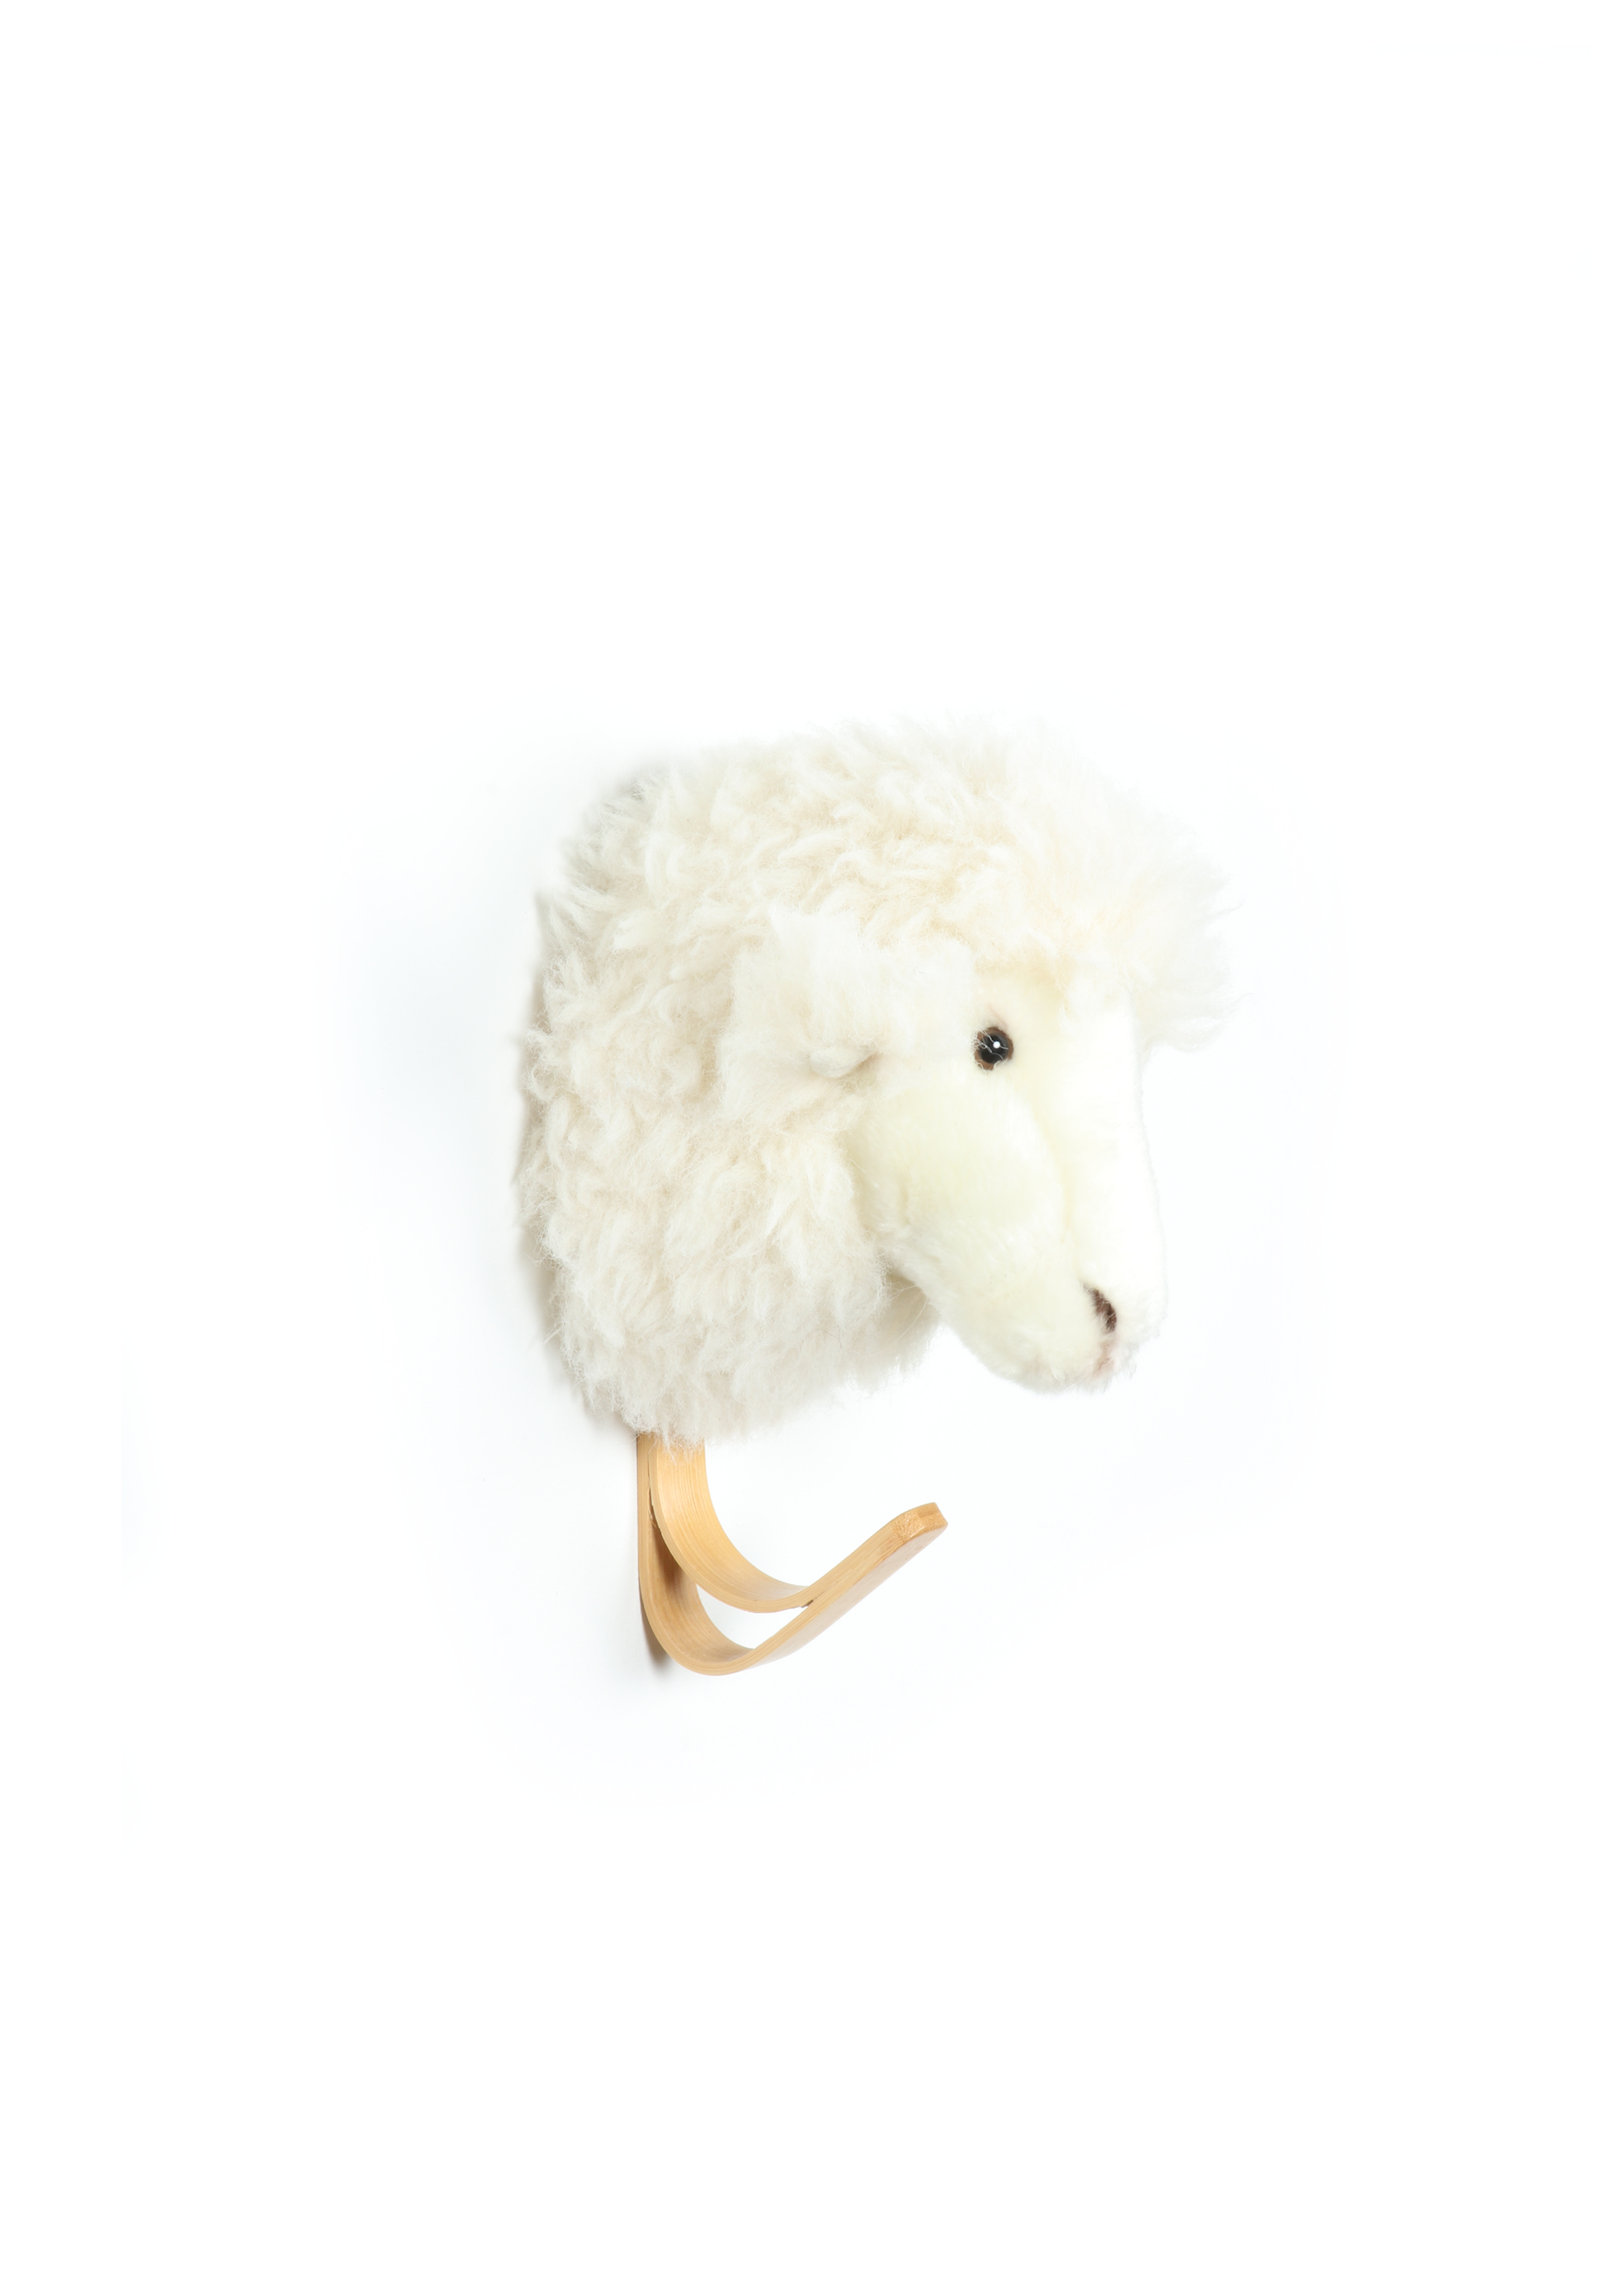 WILD&SOFT Verwandle Dein Zuhause in eine verzauberte Wohlfühloase mit dem bezaubernden Schaf-Garderobenhaken! 🐑💫